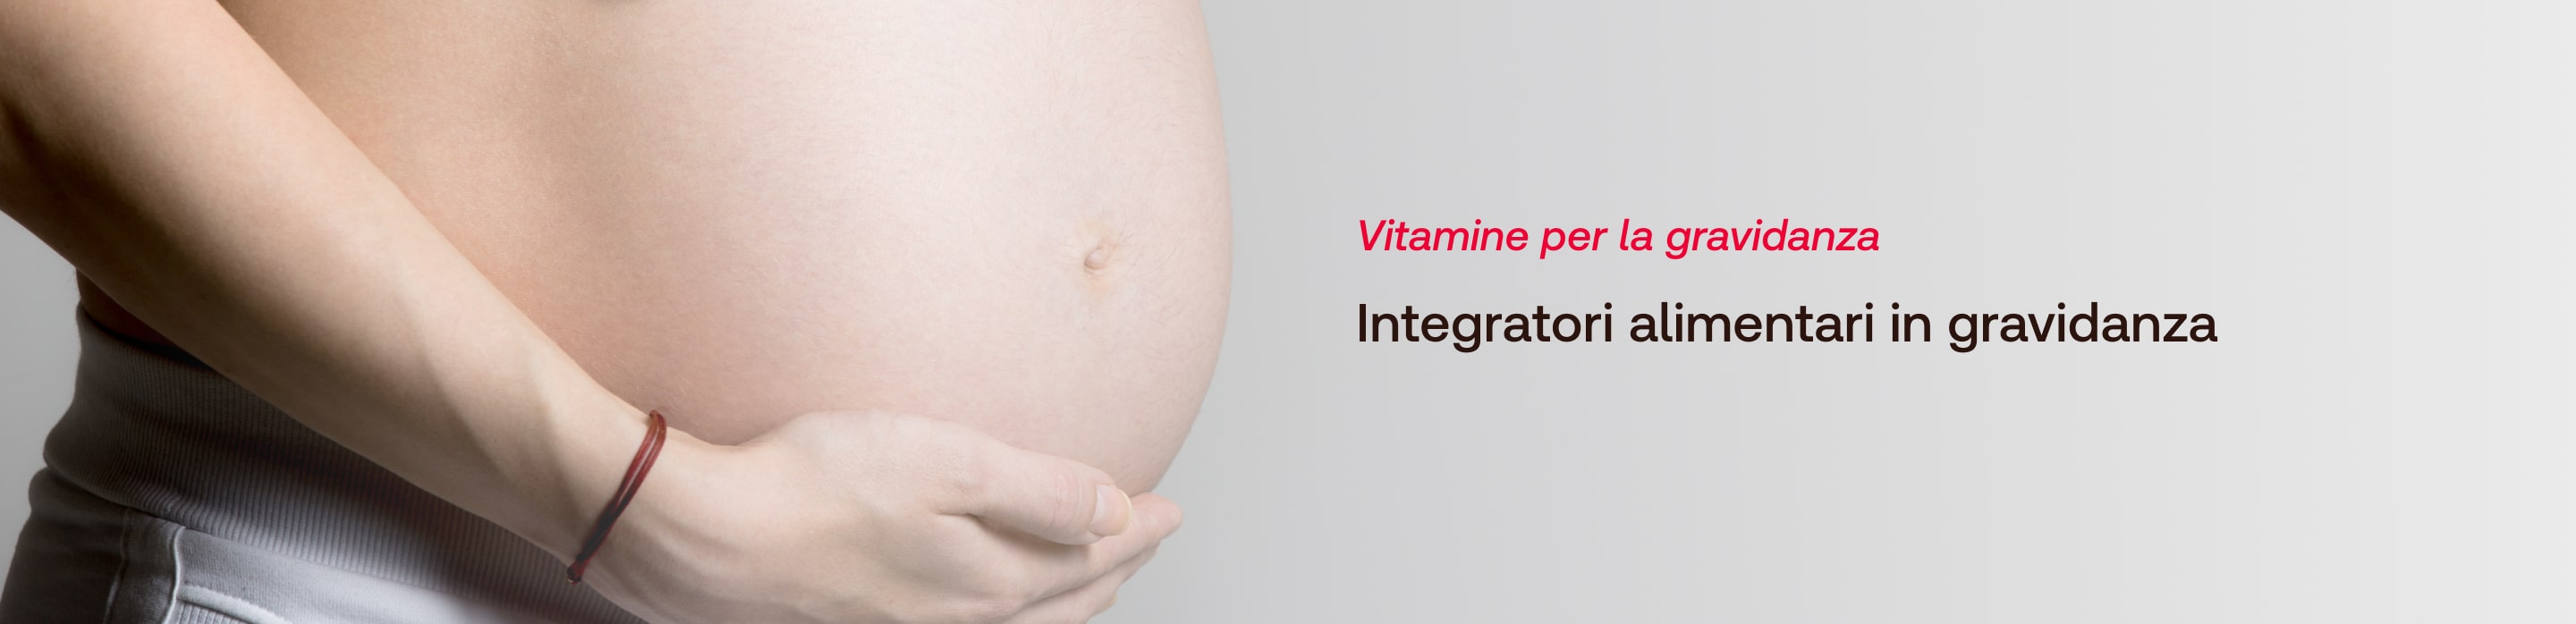 Vitamine per la gravidanza - GUIDA - Redcare